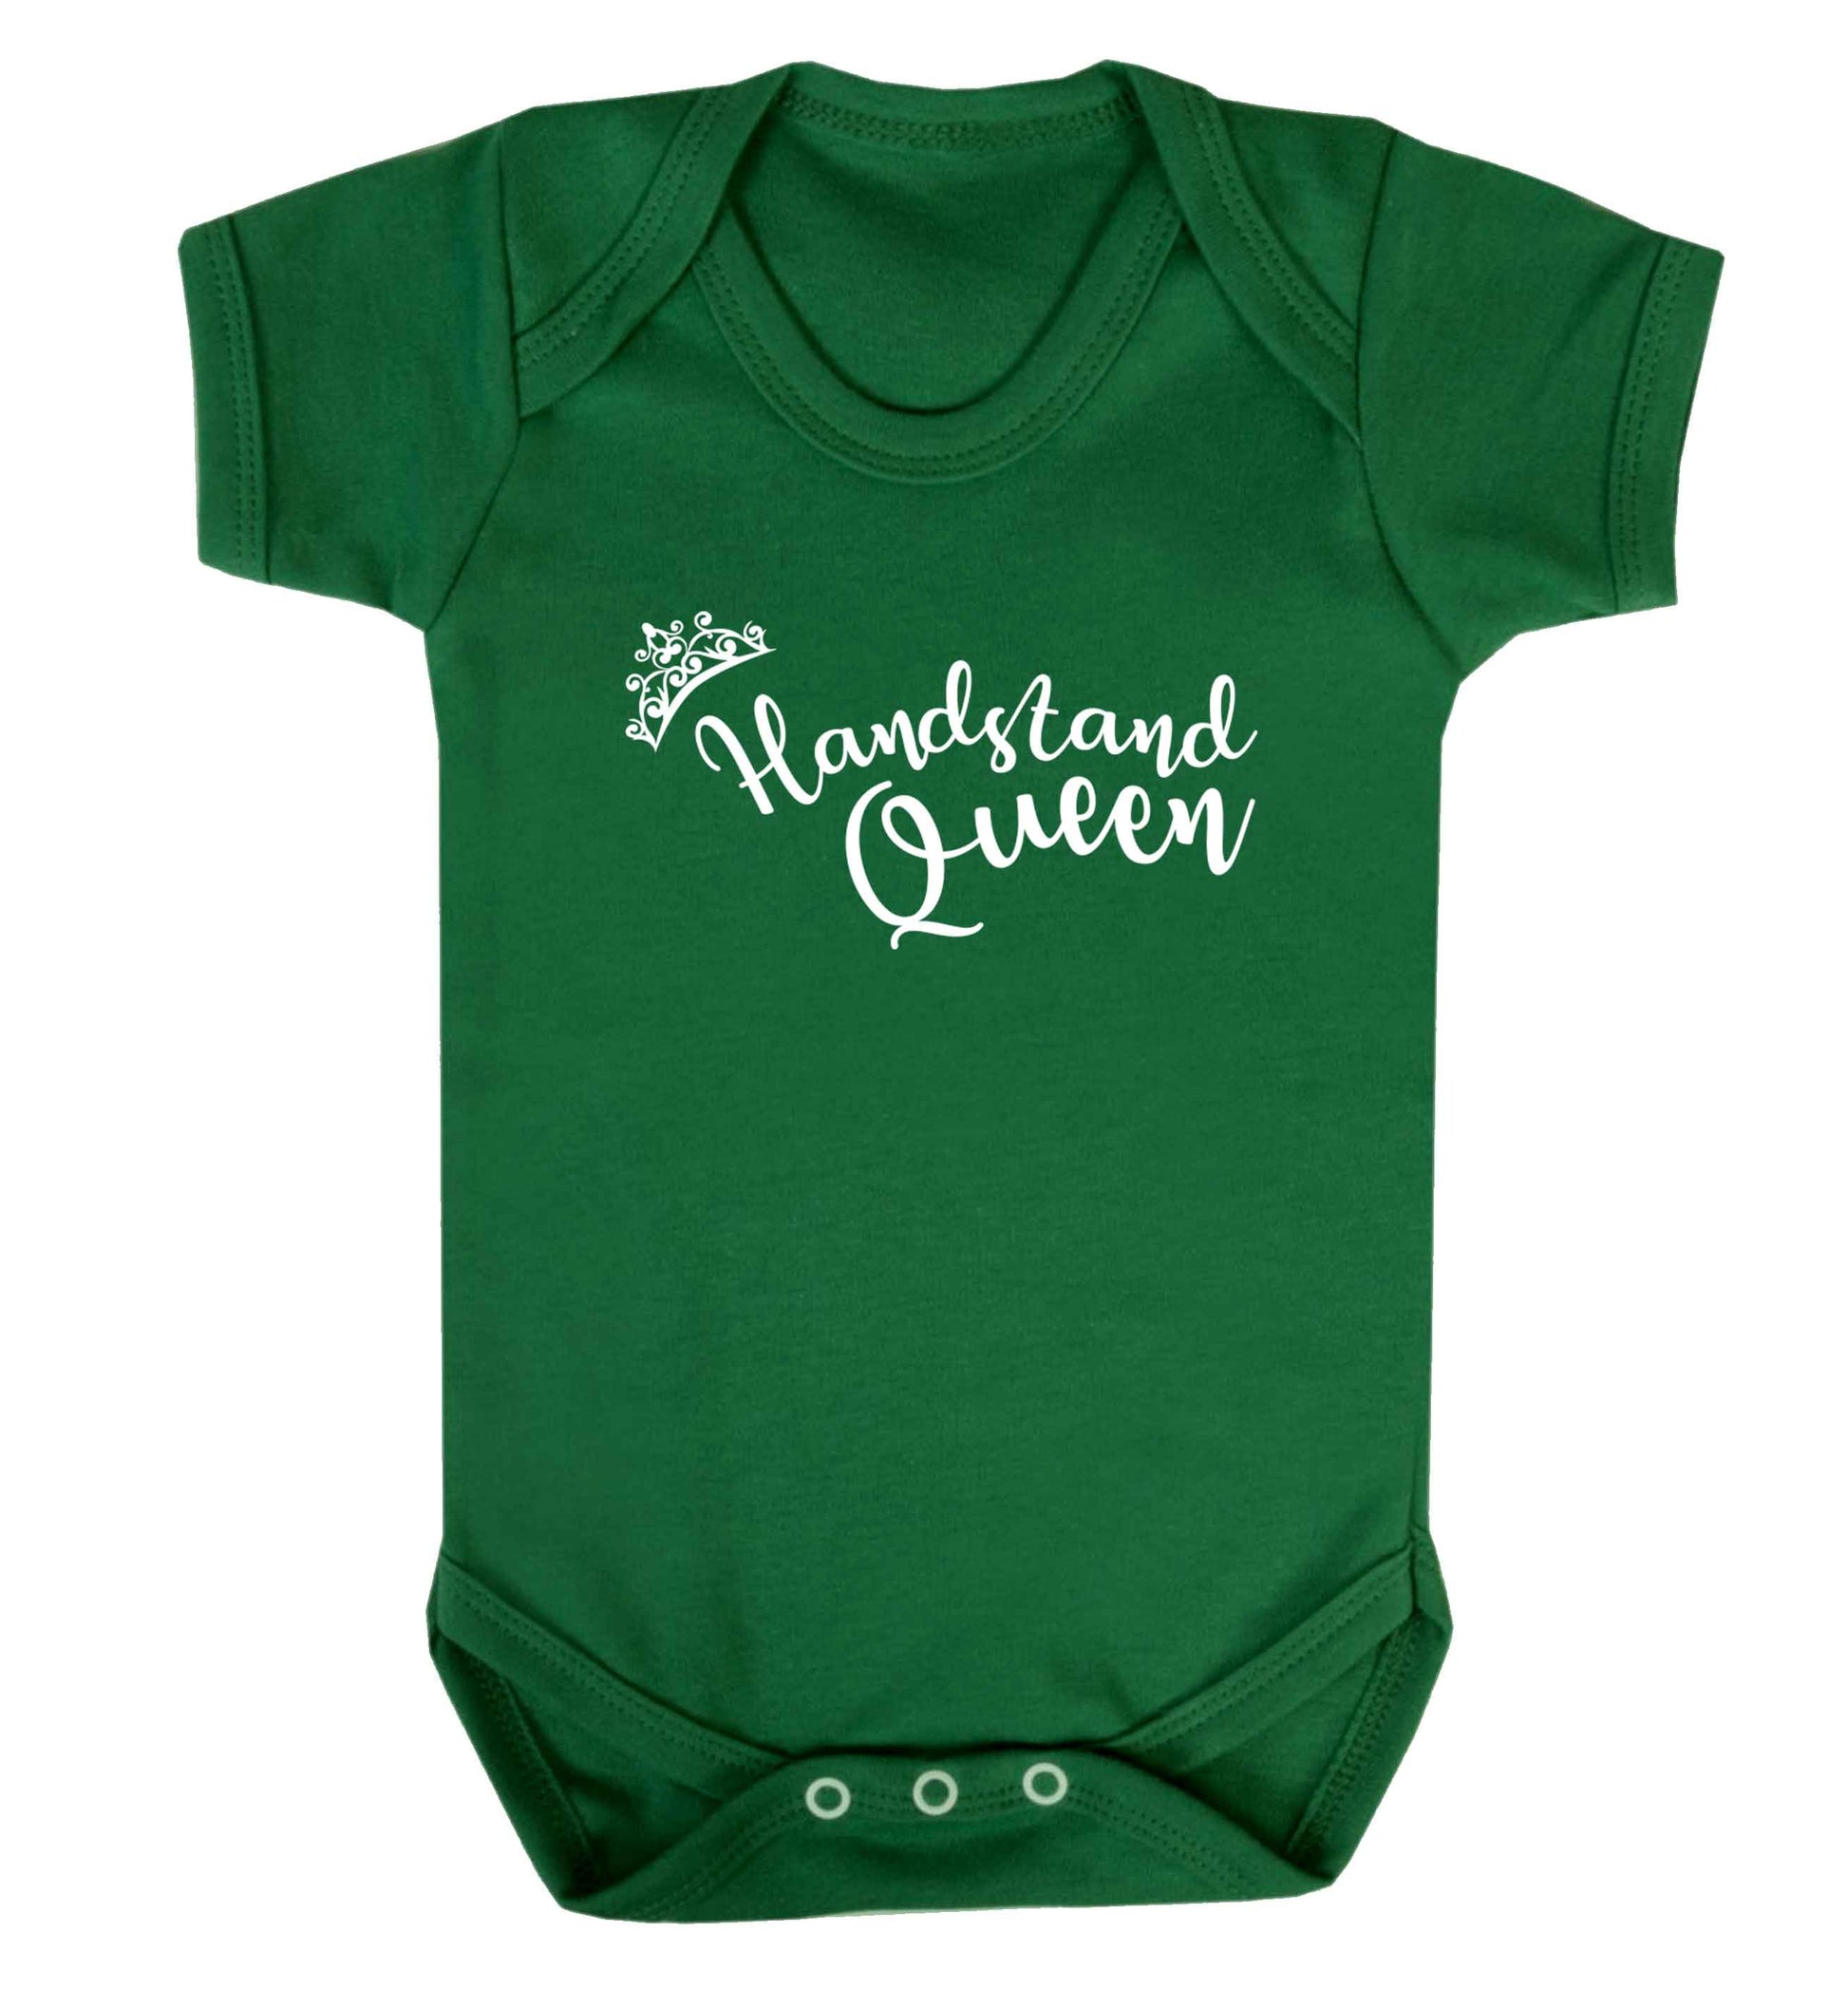 Handstand Queen Baby Vest green 18-24 months